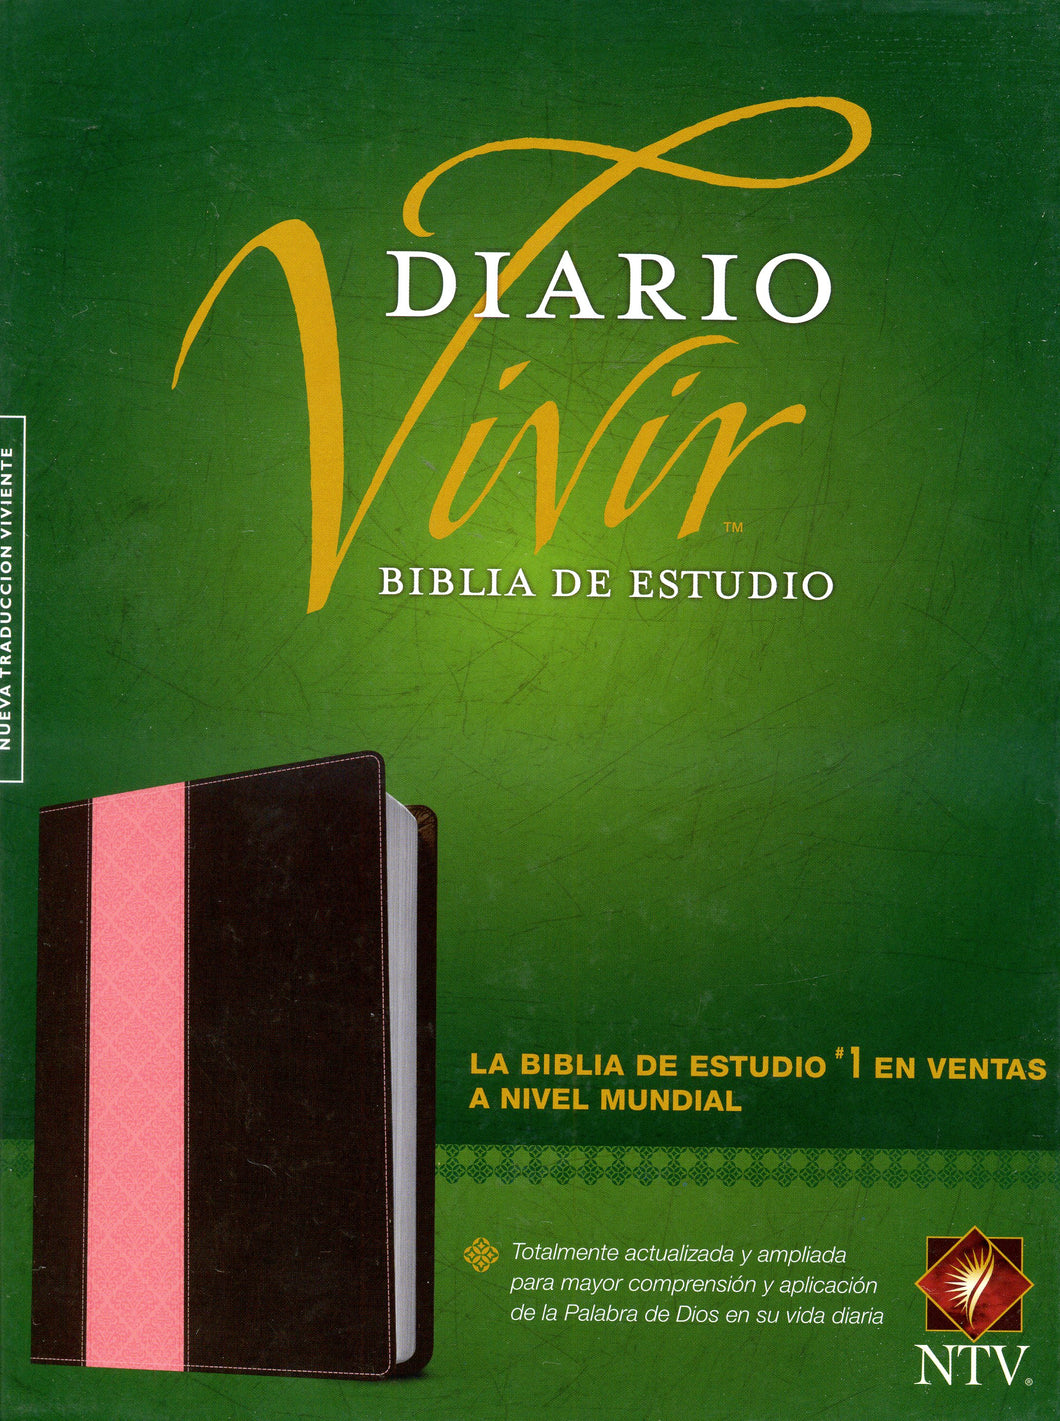 Biblia NTV - de Estudio del Diario Vivir - SentiPiel Rosa/Café